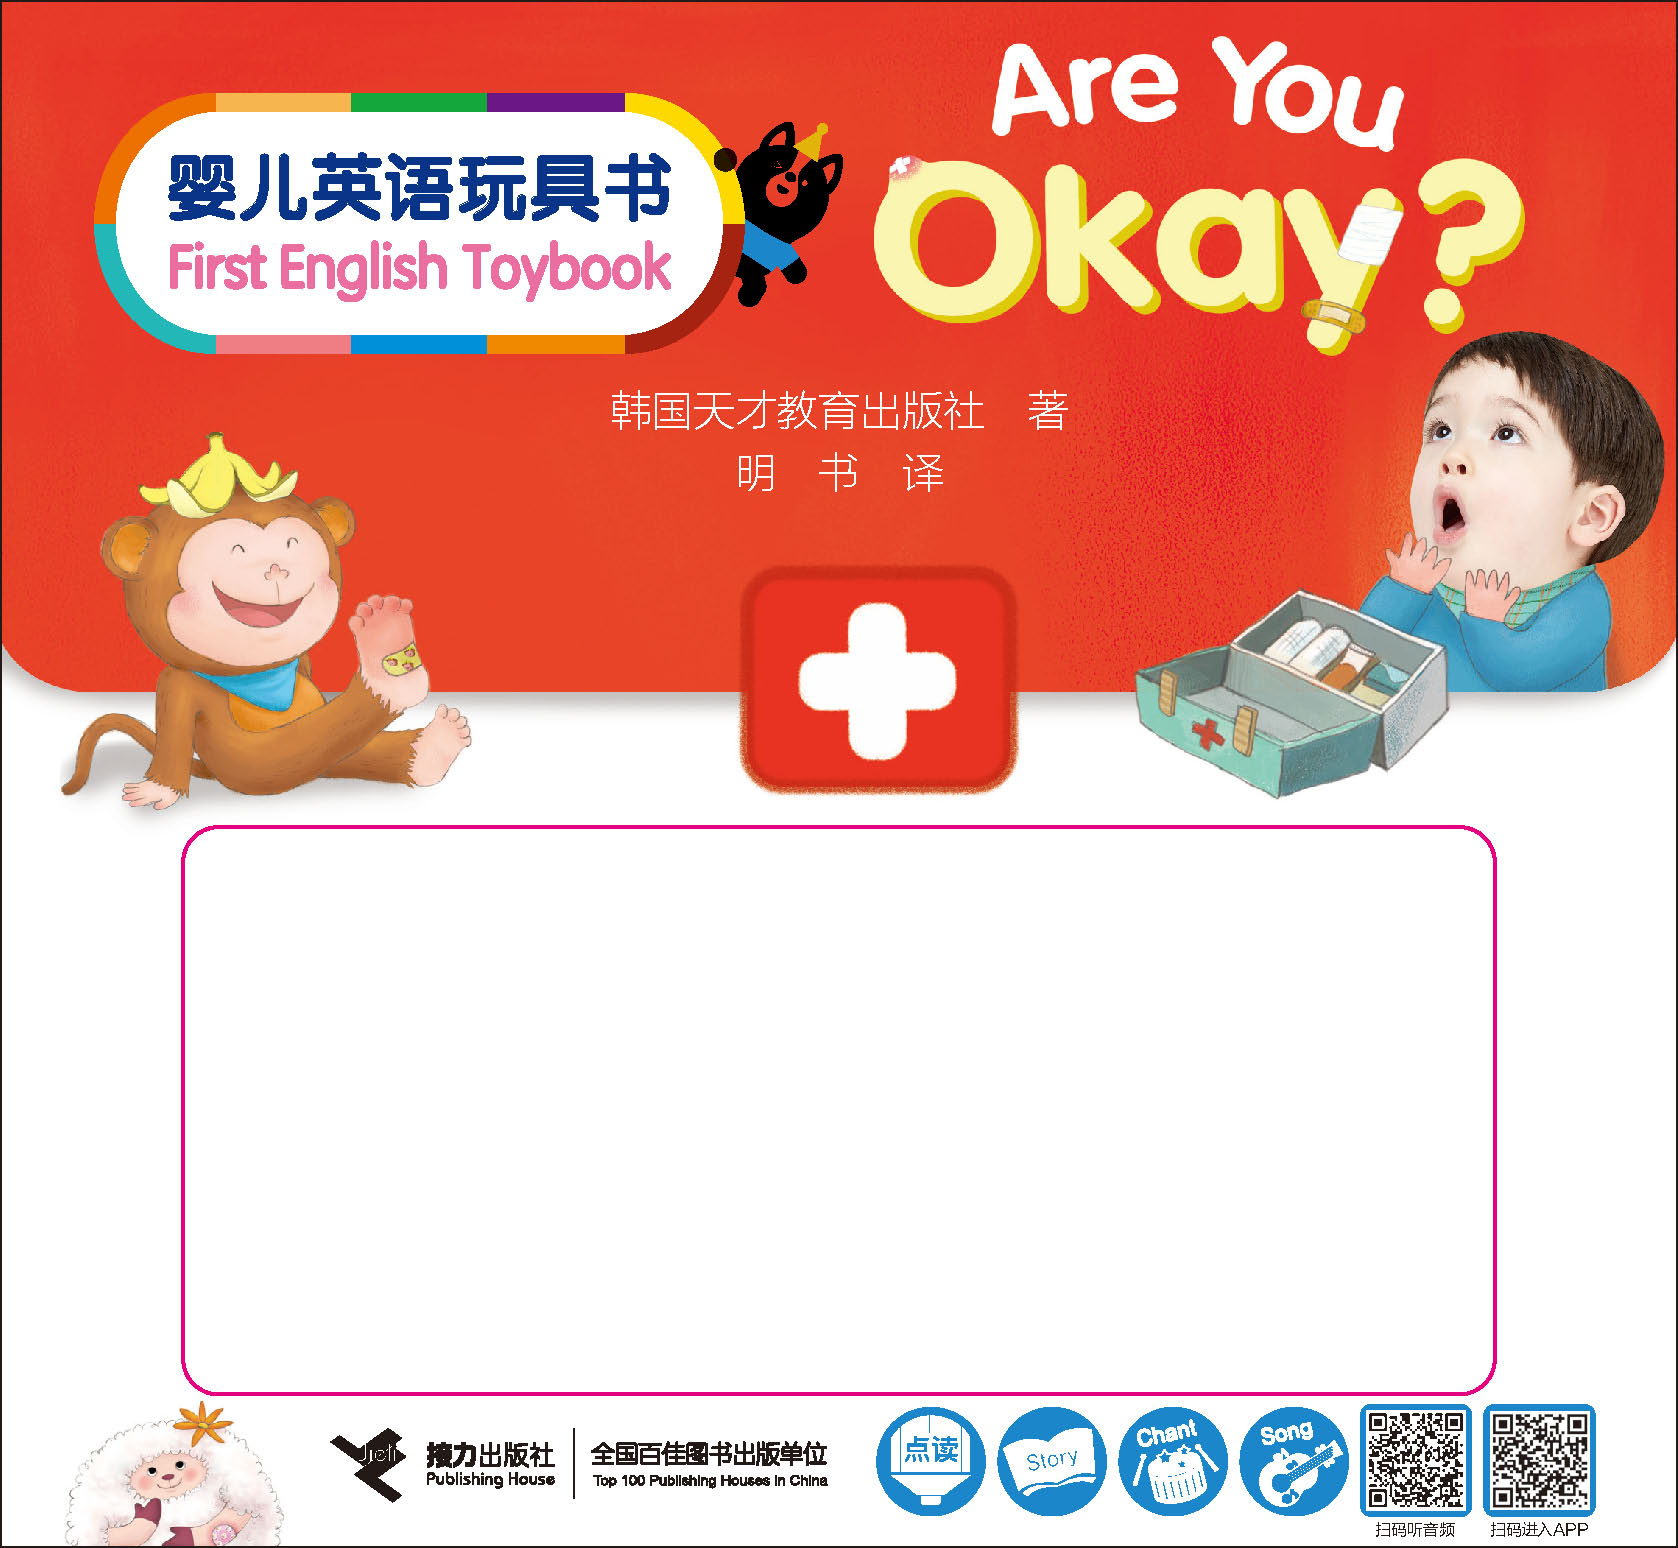 婴儿英语玩具书=First English Toybook.Are You Okay？